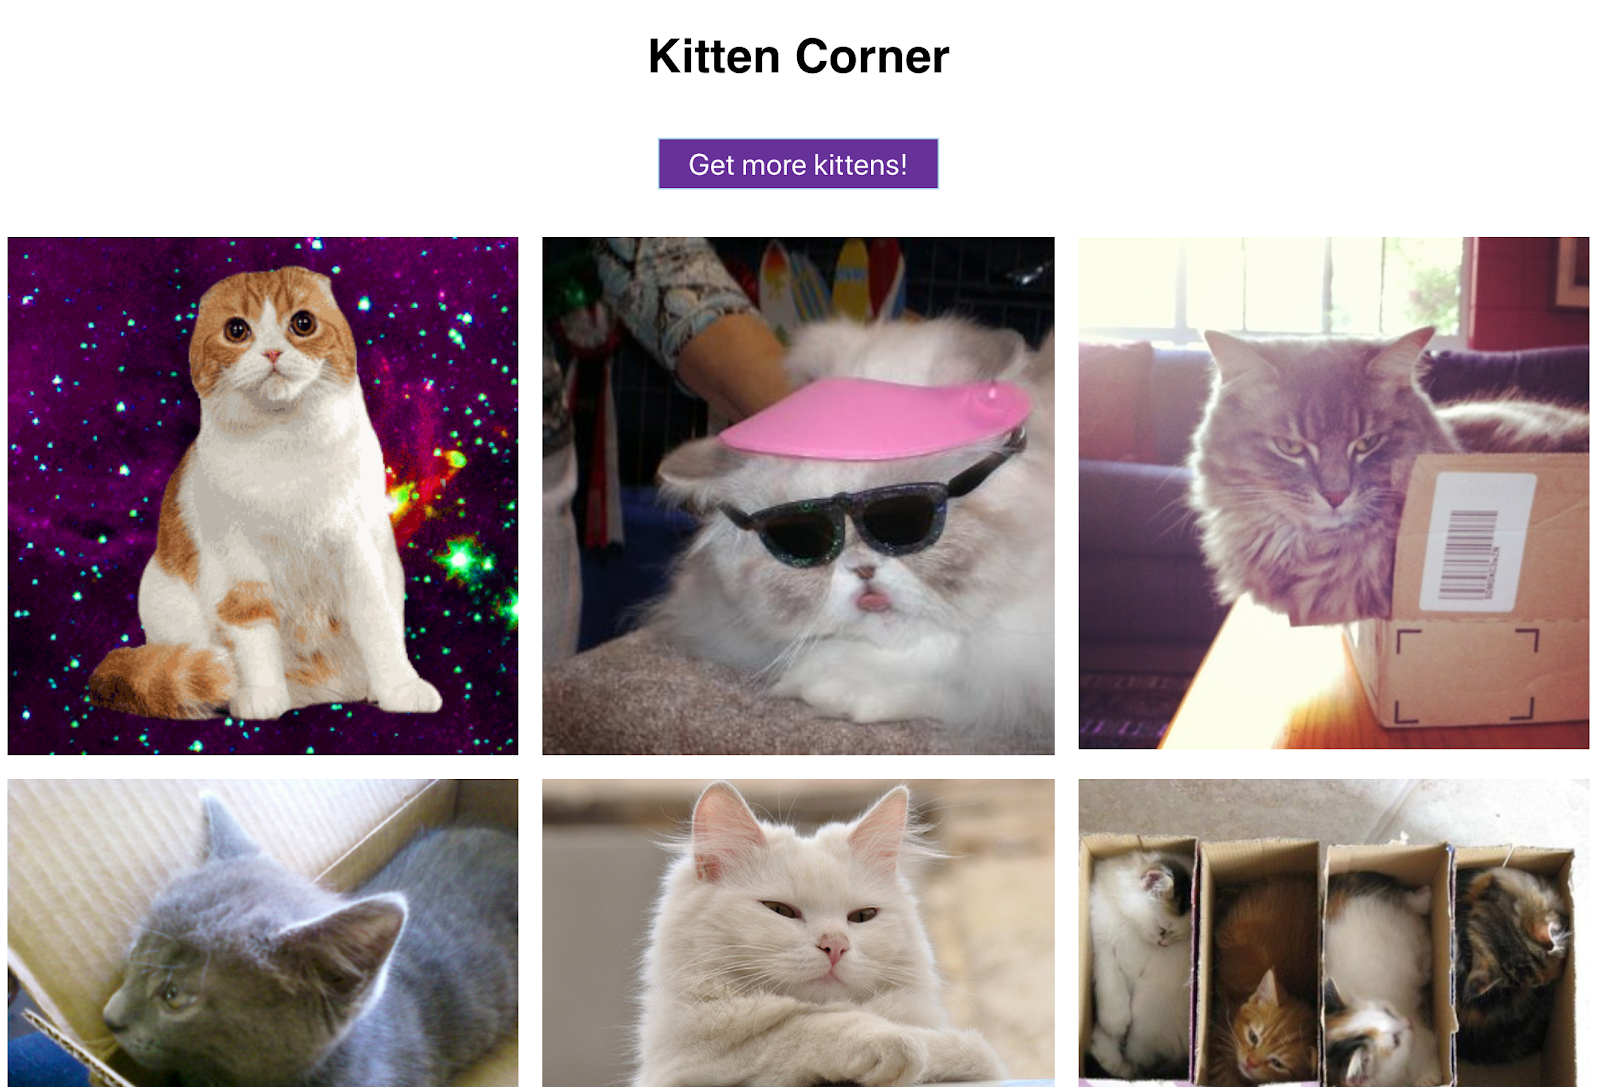 グリッド形式で猫の画像が表示され、ボタンでさらに画像を表示できます。まさに理想のウェブアプリと言えるでしょう。